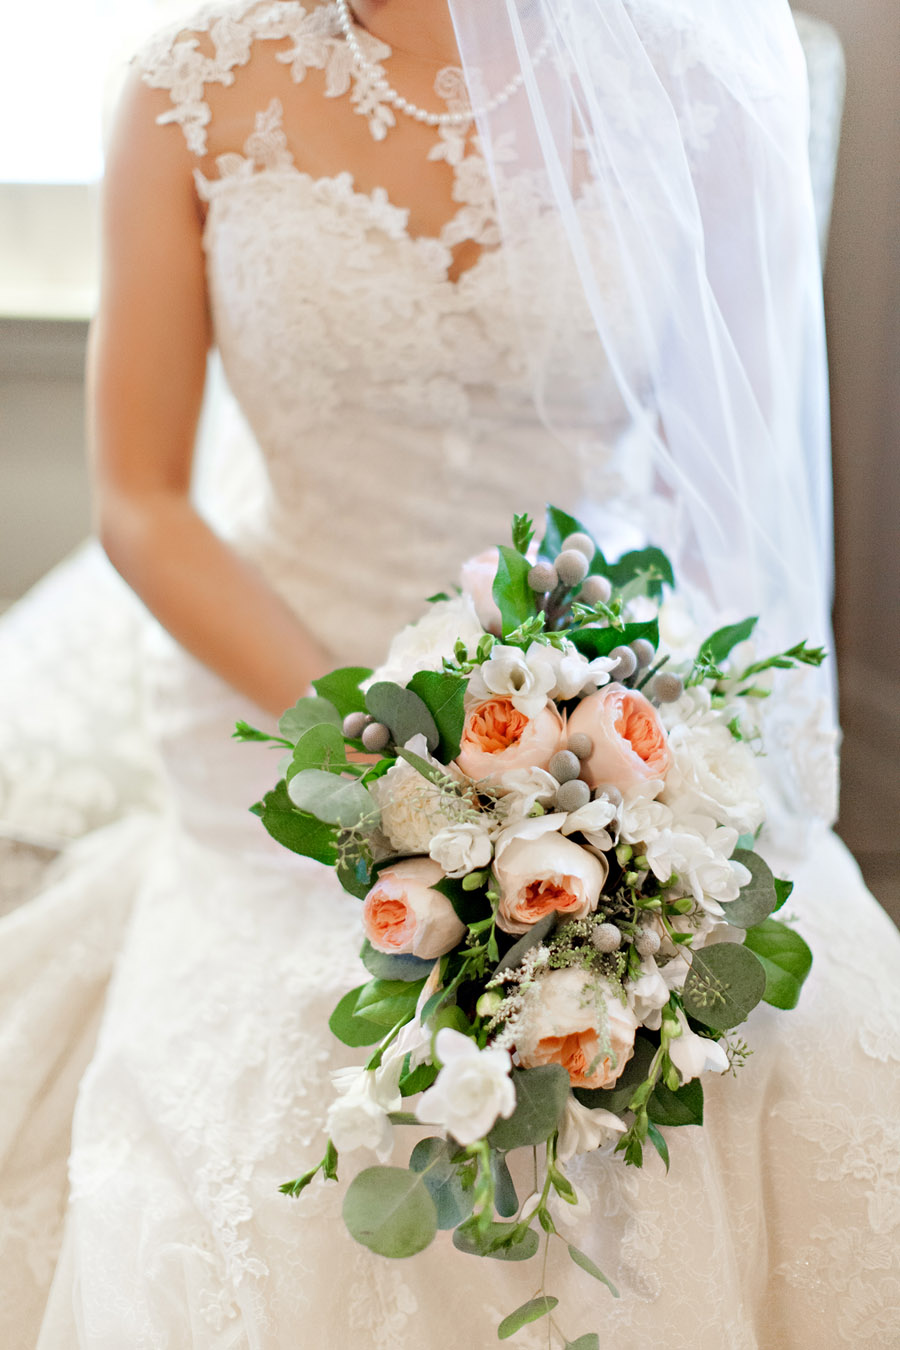 027-Dallas-Wedding-Gown-Bridal-bouquet-Peach-Peonies-by-Ivy-Weddings-Dallas-Wedding-Photographer-Planned-By-Swank-Soiree-Dallas-Wedding-Planner.jpg